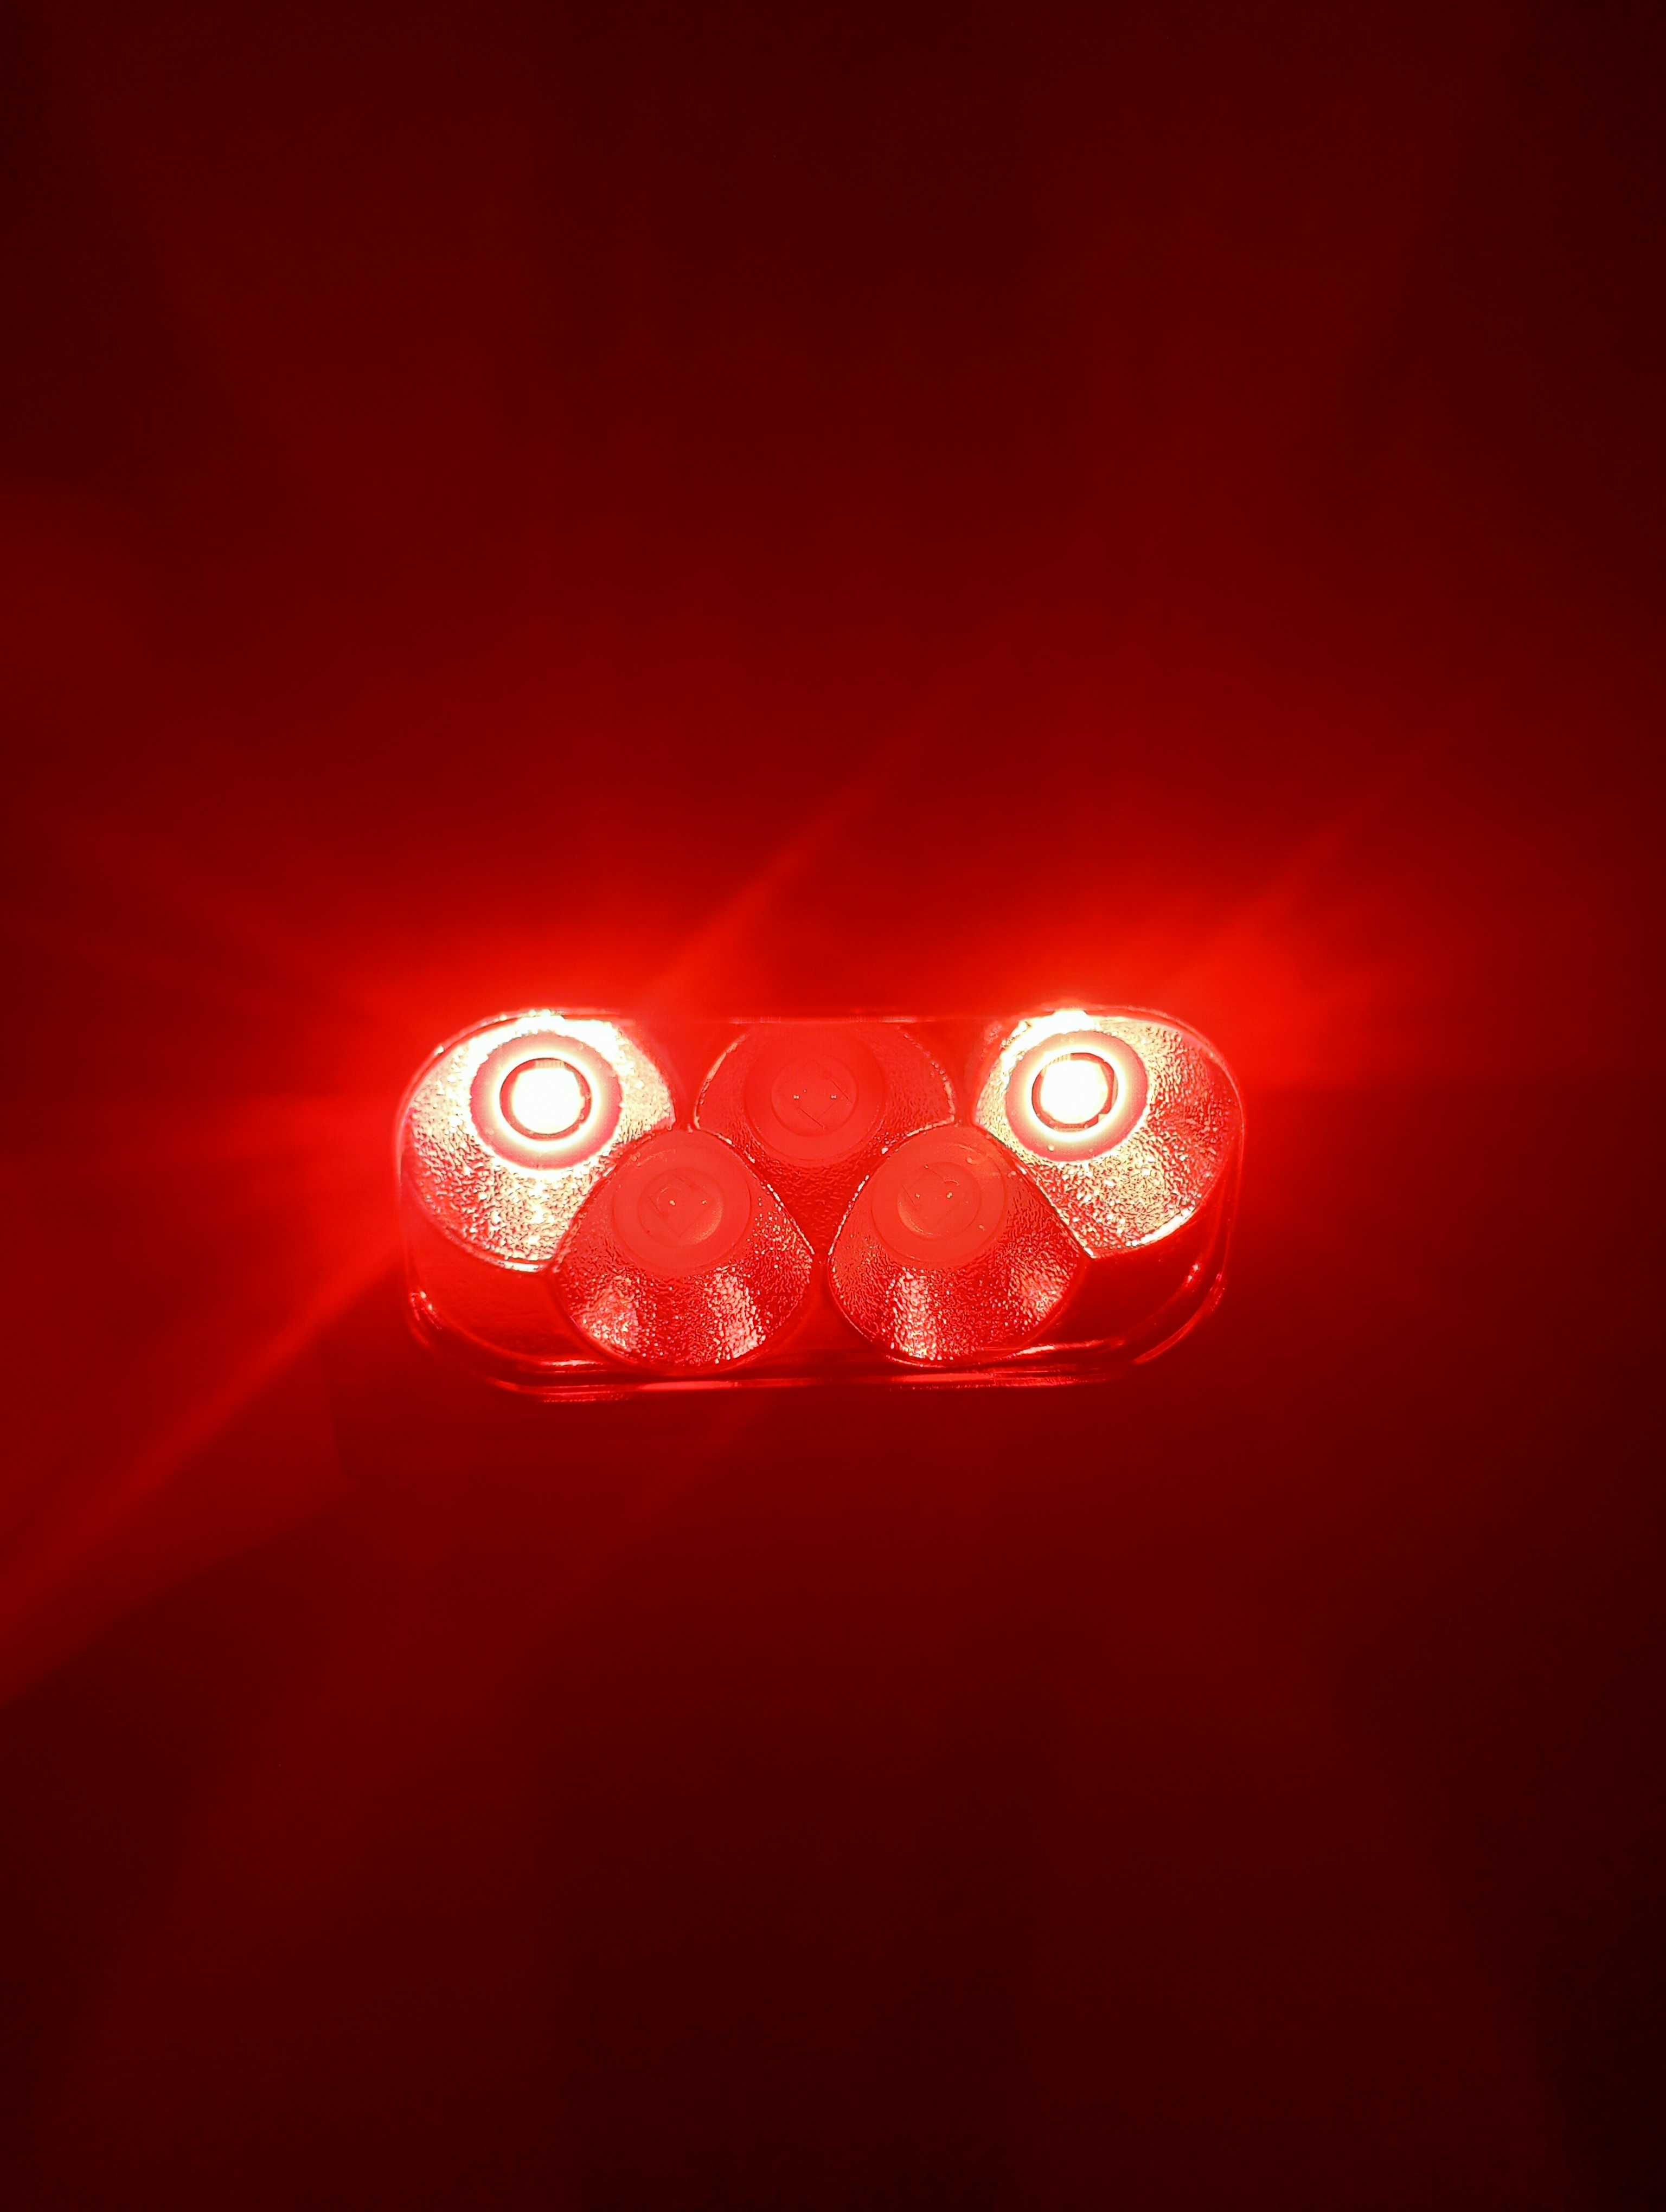 Налобный фонарик UltraRay есть с красными диодами